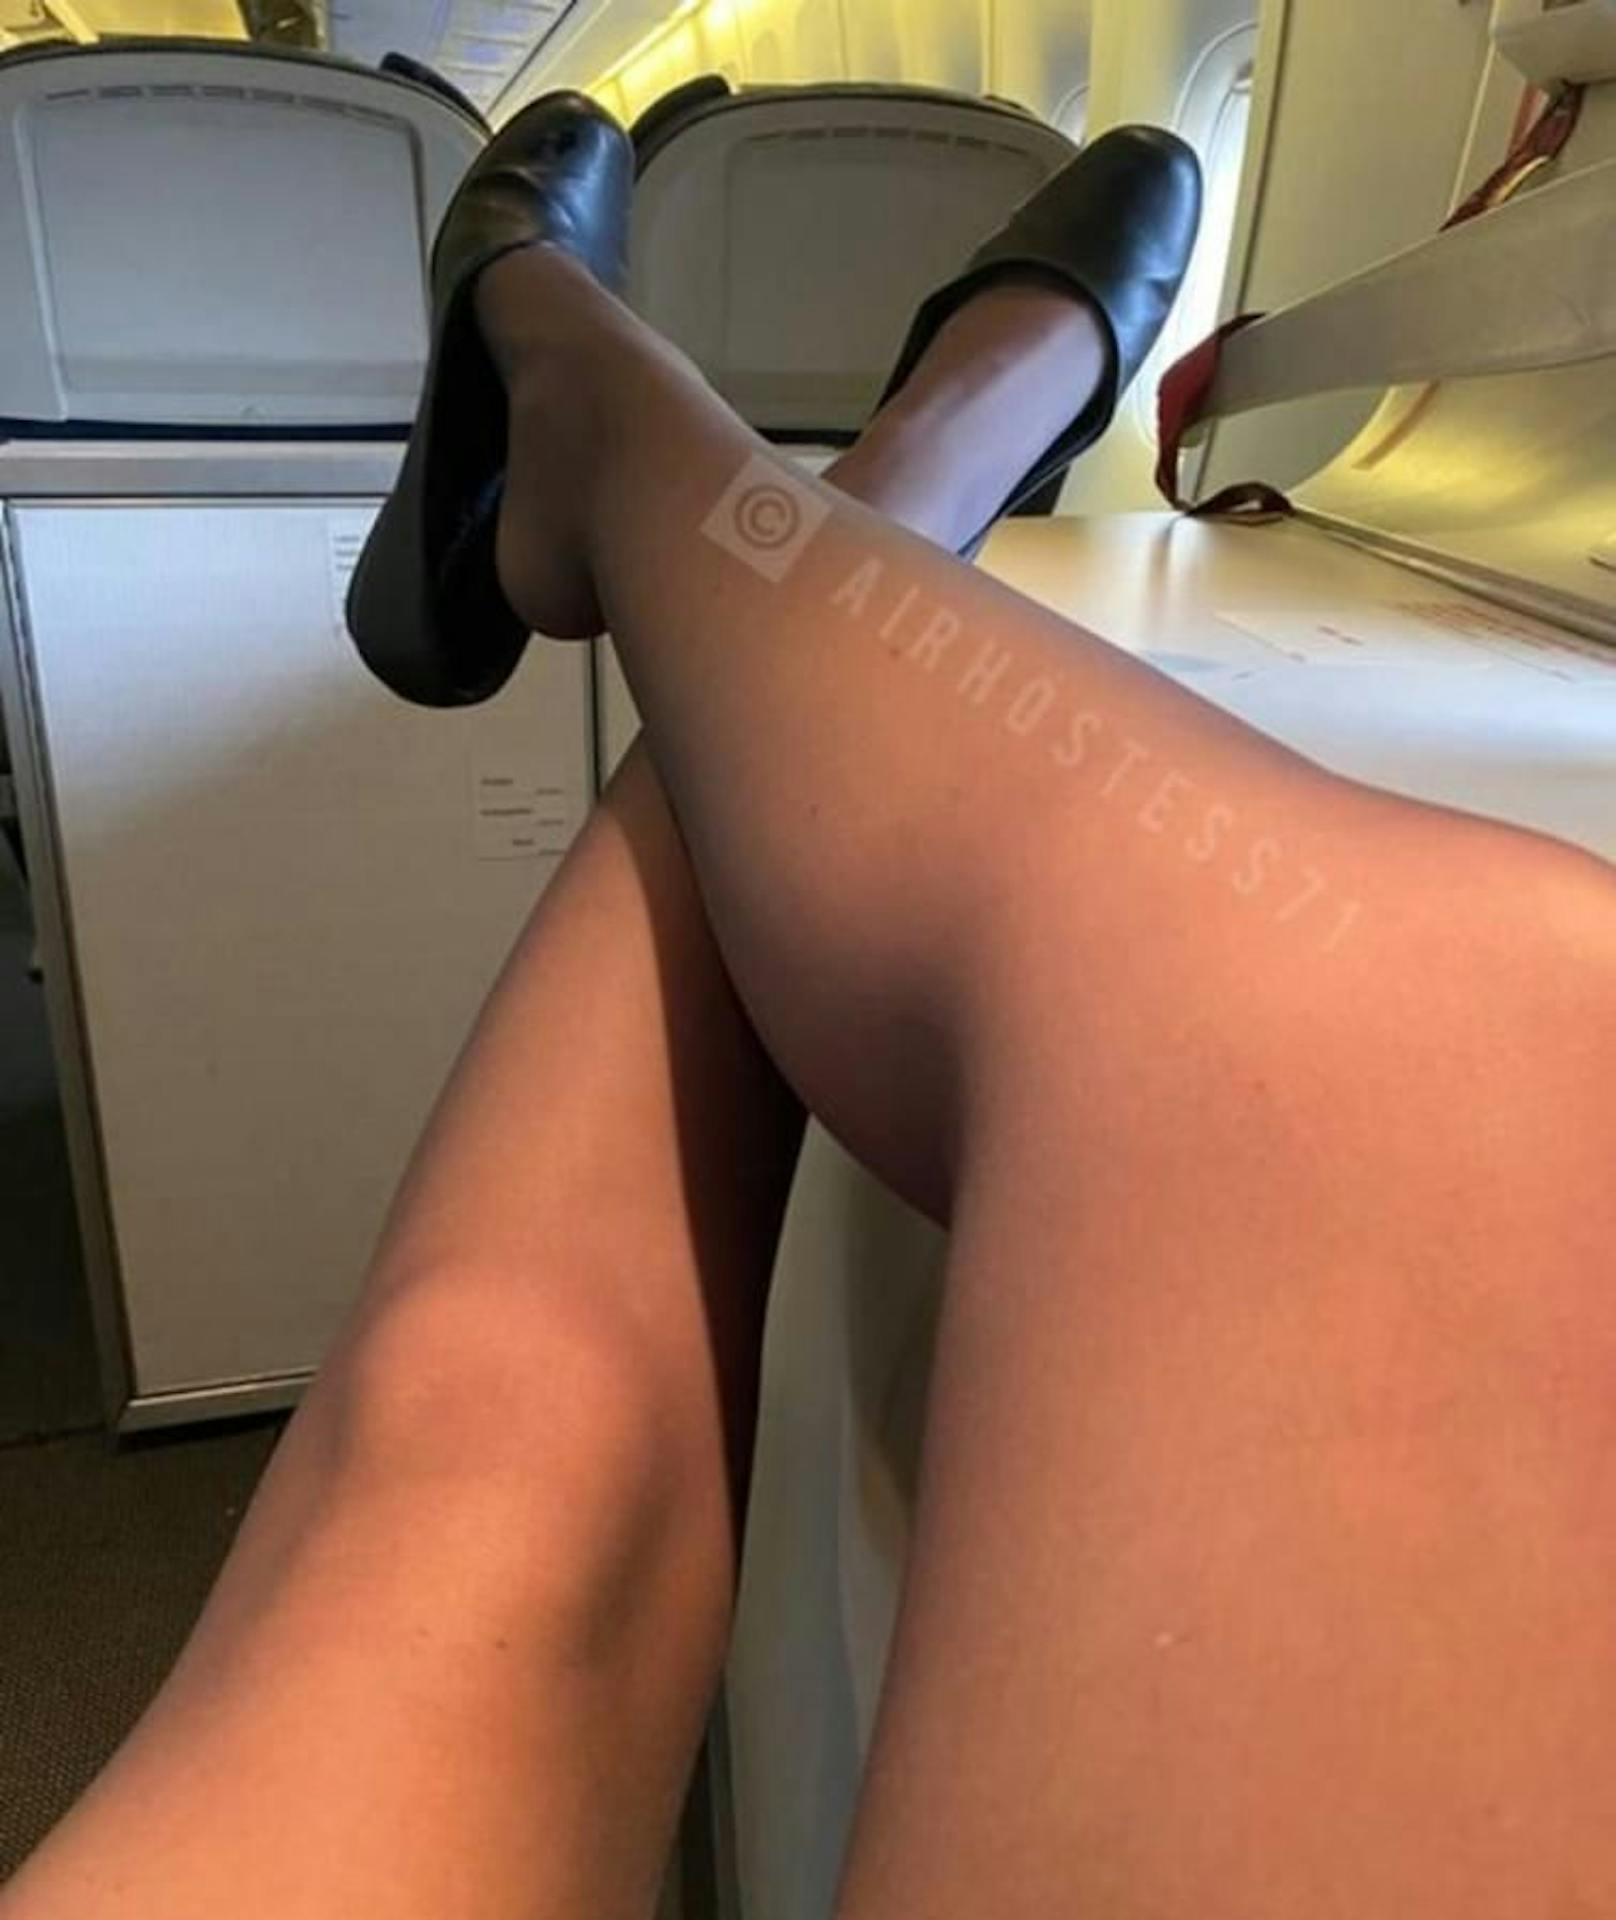 Eine Stewardess von British Airways bot Reisenden vor, während und nach Flügen ihre sexuellen Dienste an. Nun sucht die Fluglinie nach der Frau.